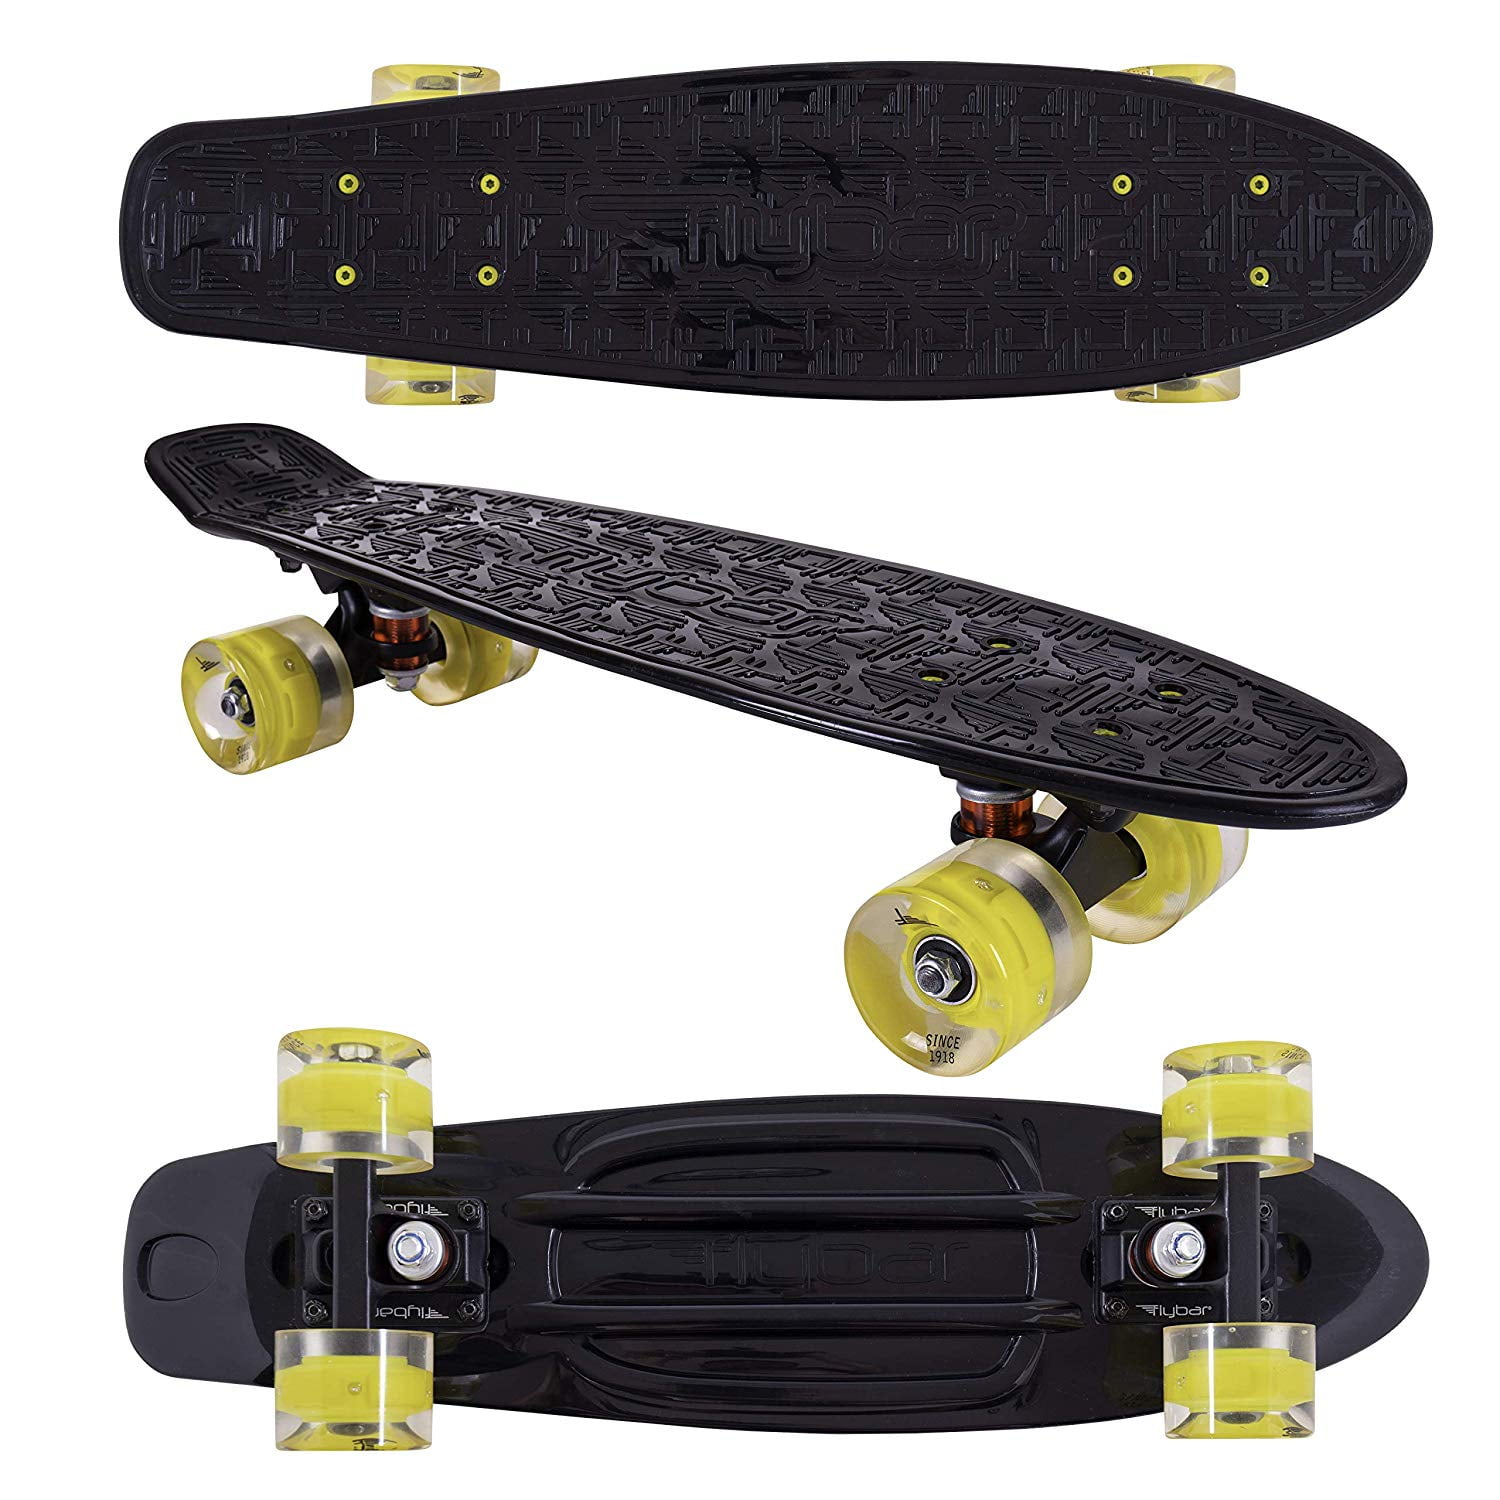 22" LED Skateboard Complete Board Mini Cruiser Plastic Skateboard Kids Gift UK 